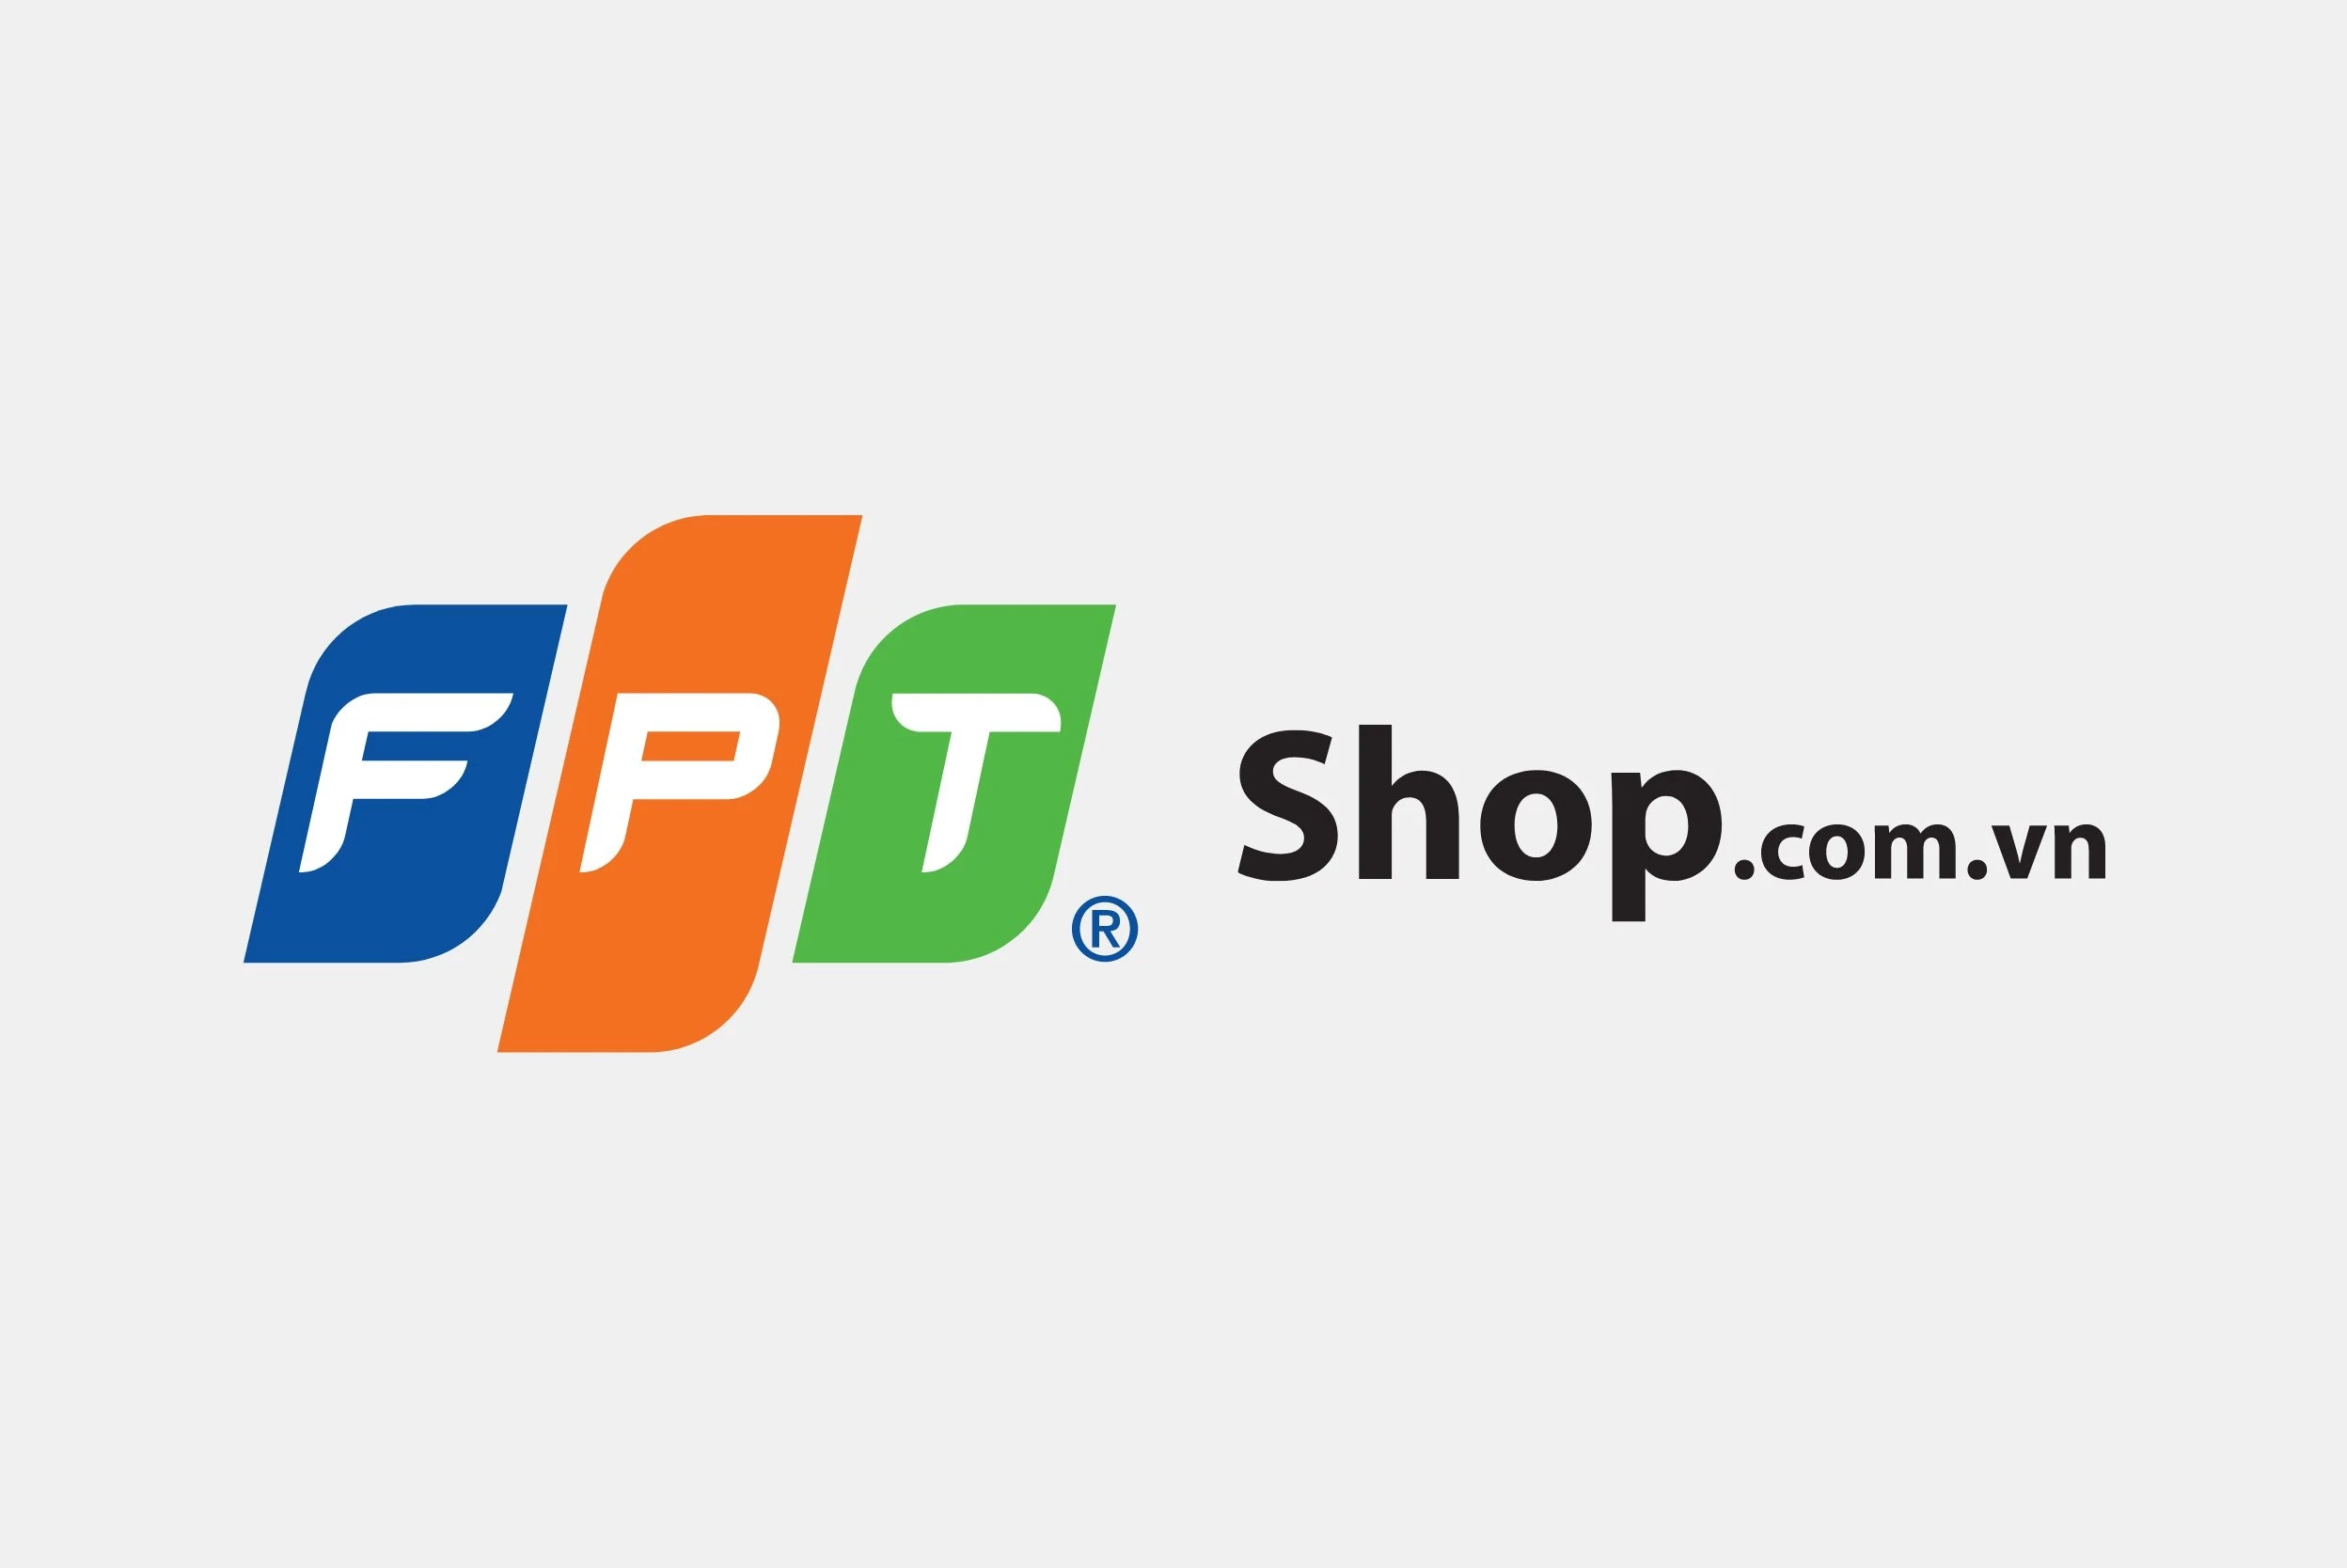 fpt-shop-logo.webp